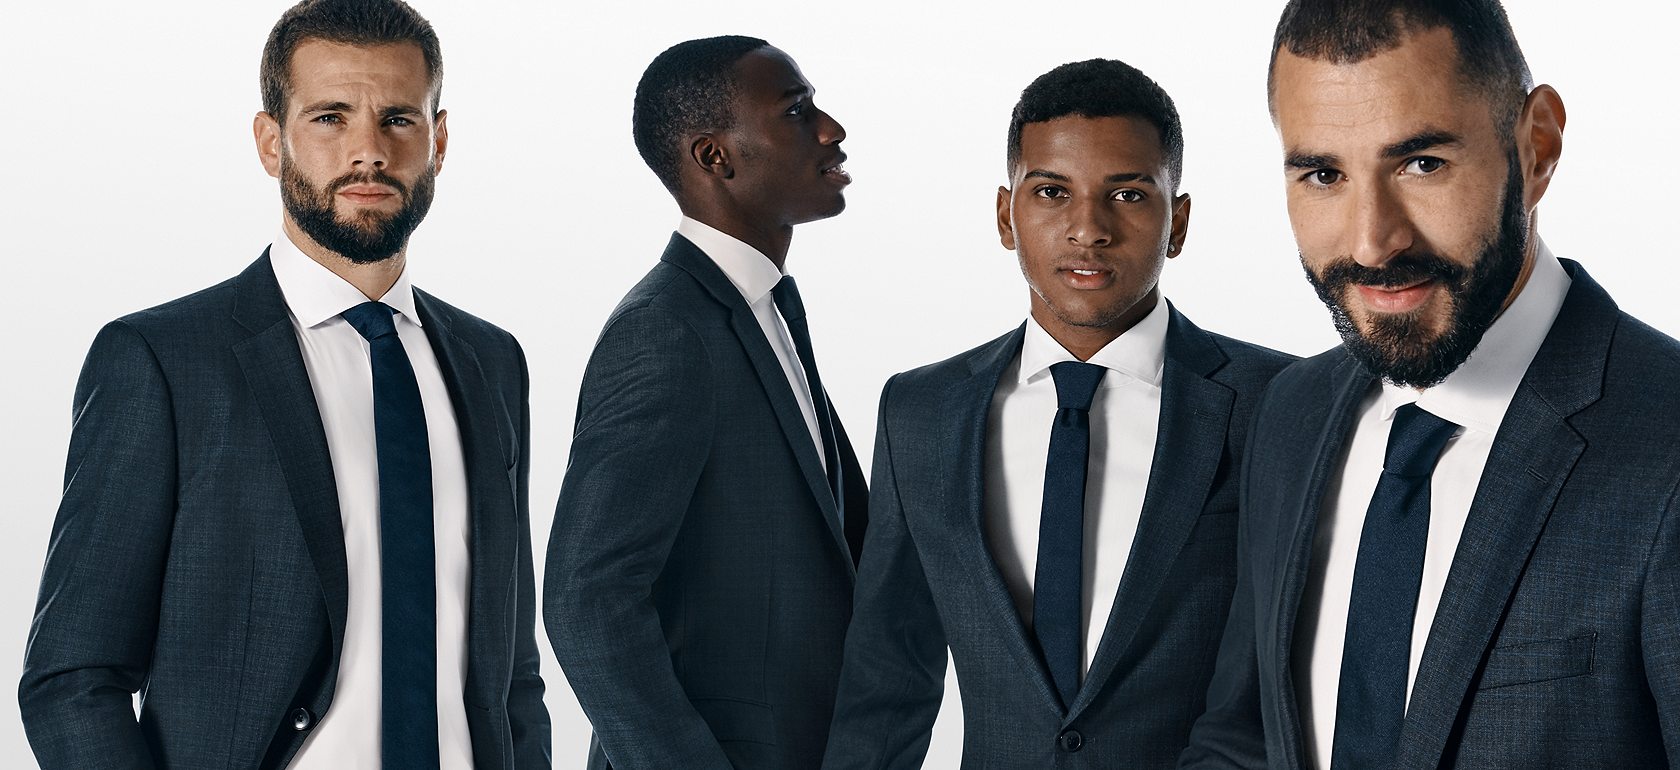 Uitstekend getuige Het eens zijn met Real Madrid C. F. - Players wearing BOSS | Suits & casual looks